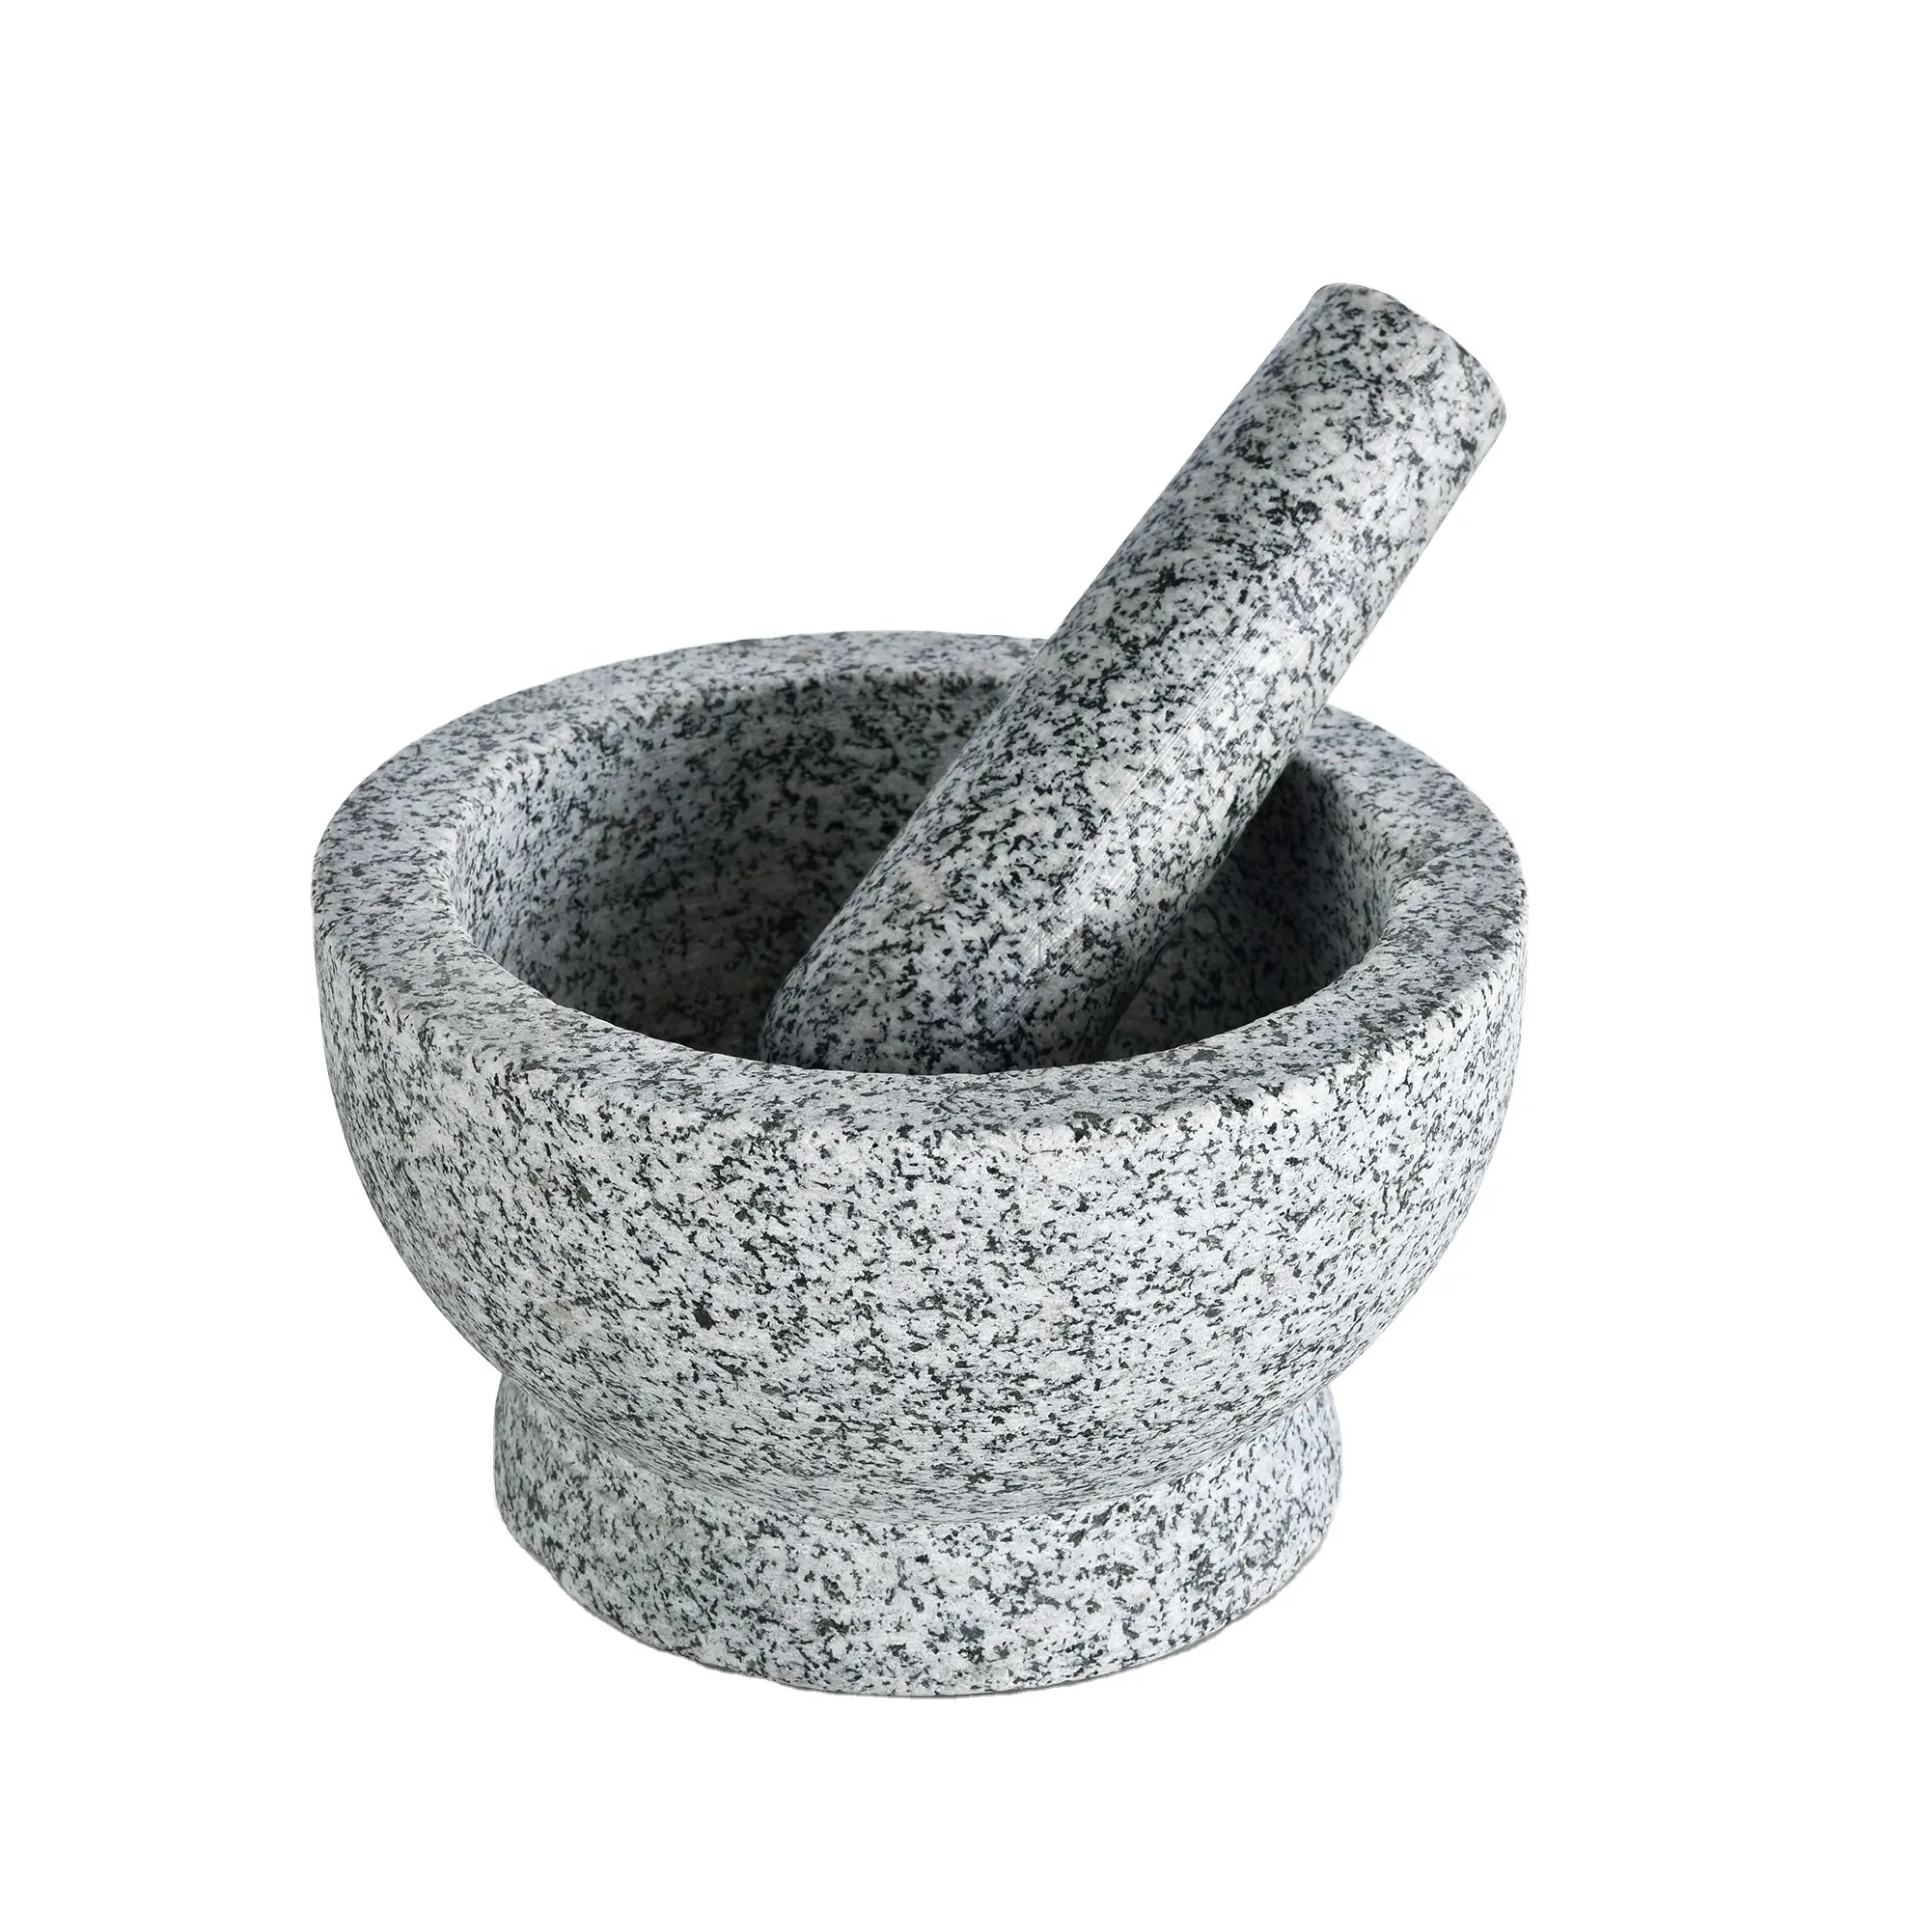 Mortier naturel, pierre de granit pour la cuisine, 1 pièce